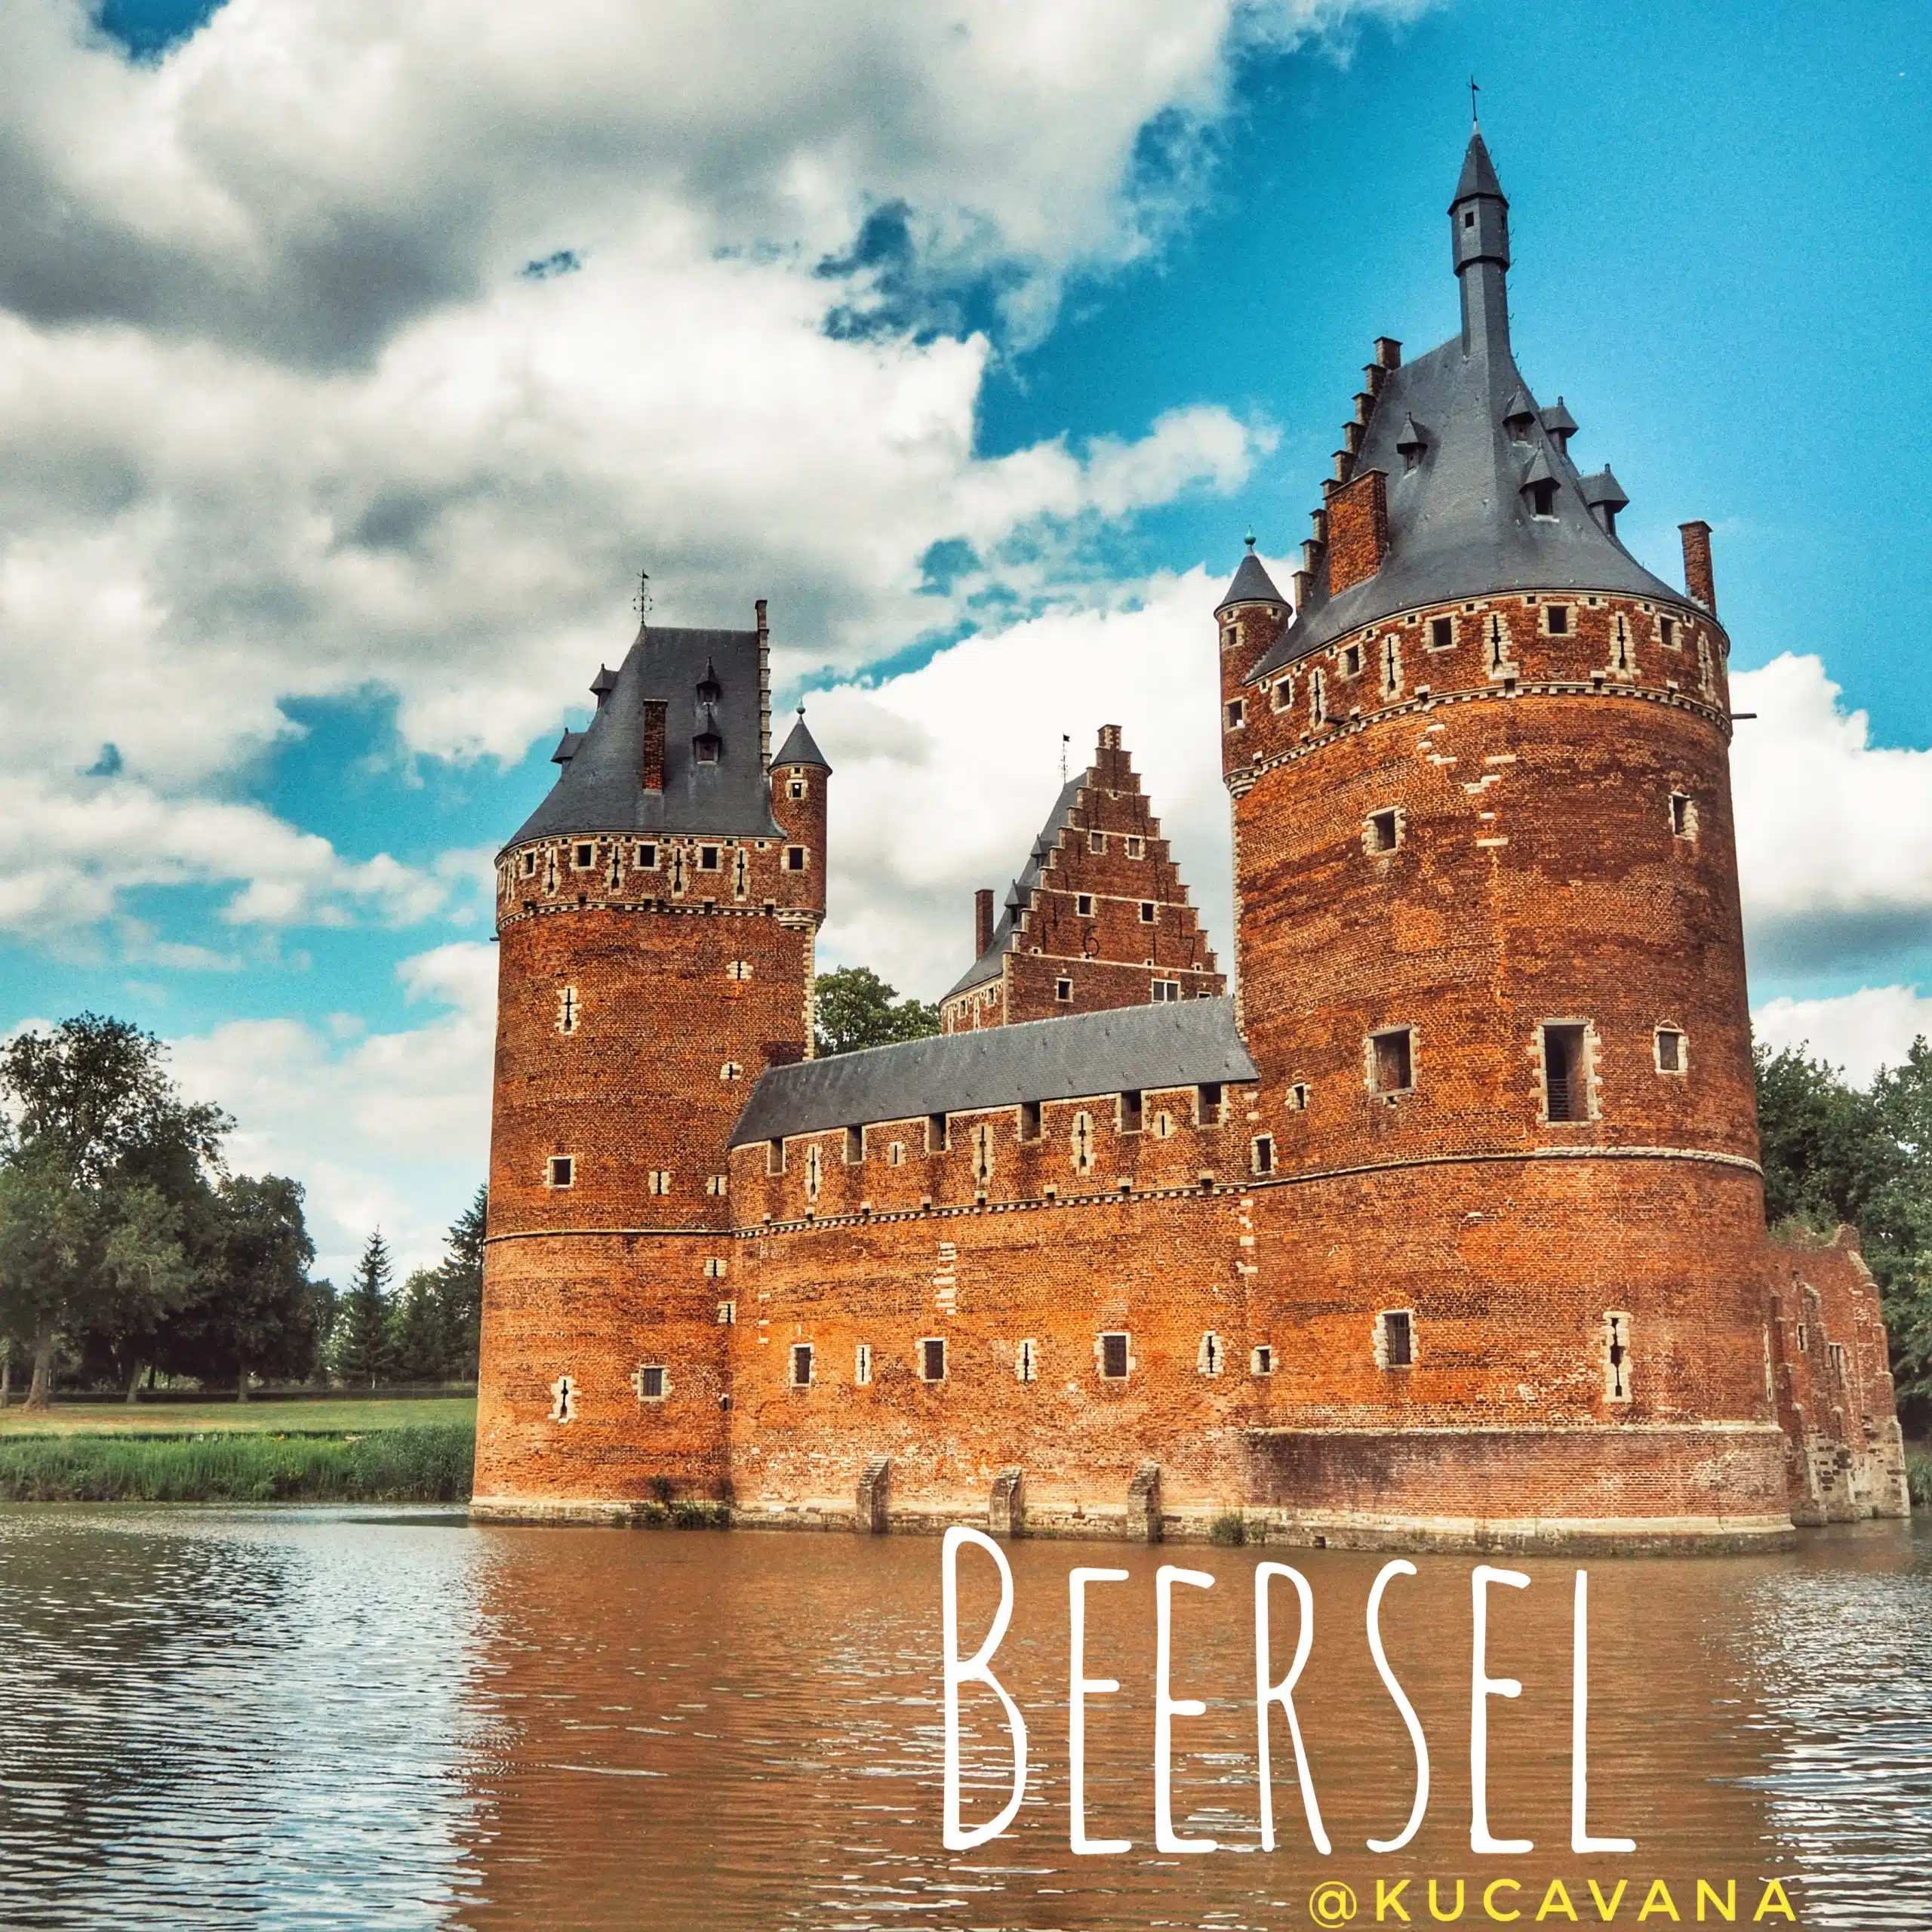 En ce moment vous voyez Beersel, un château belge dans le plus pur style Brabant Flamand